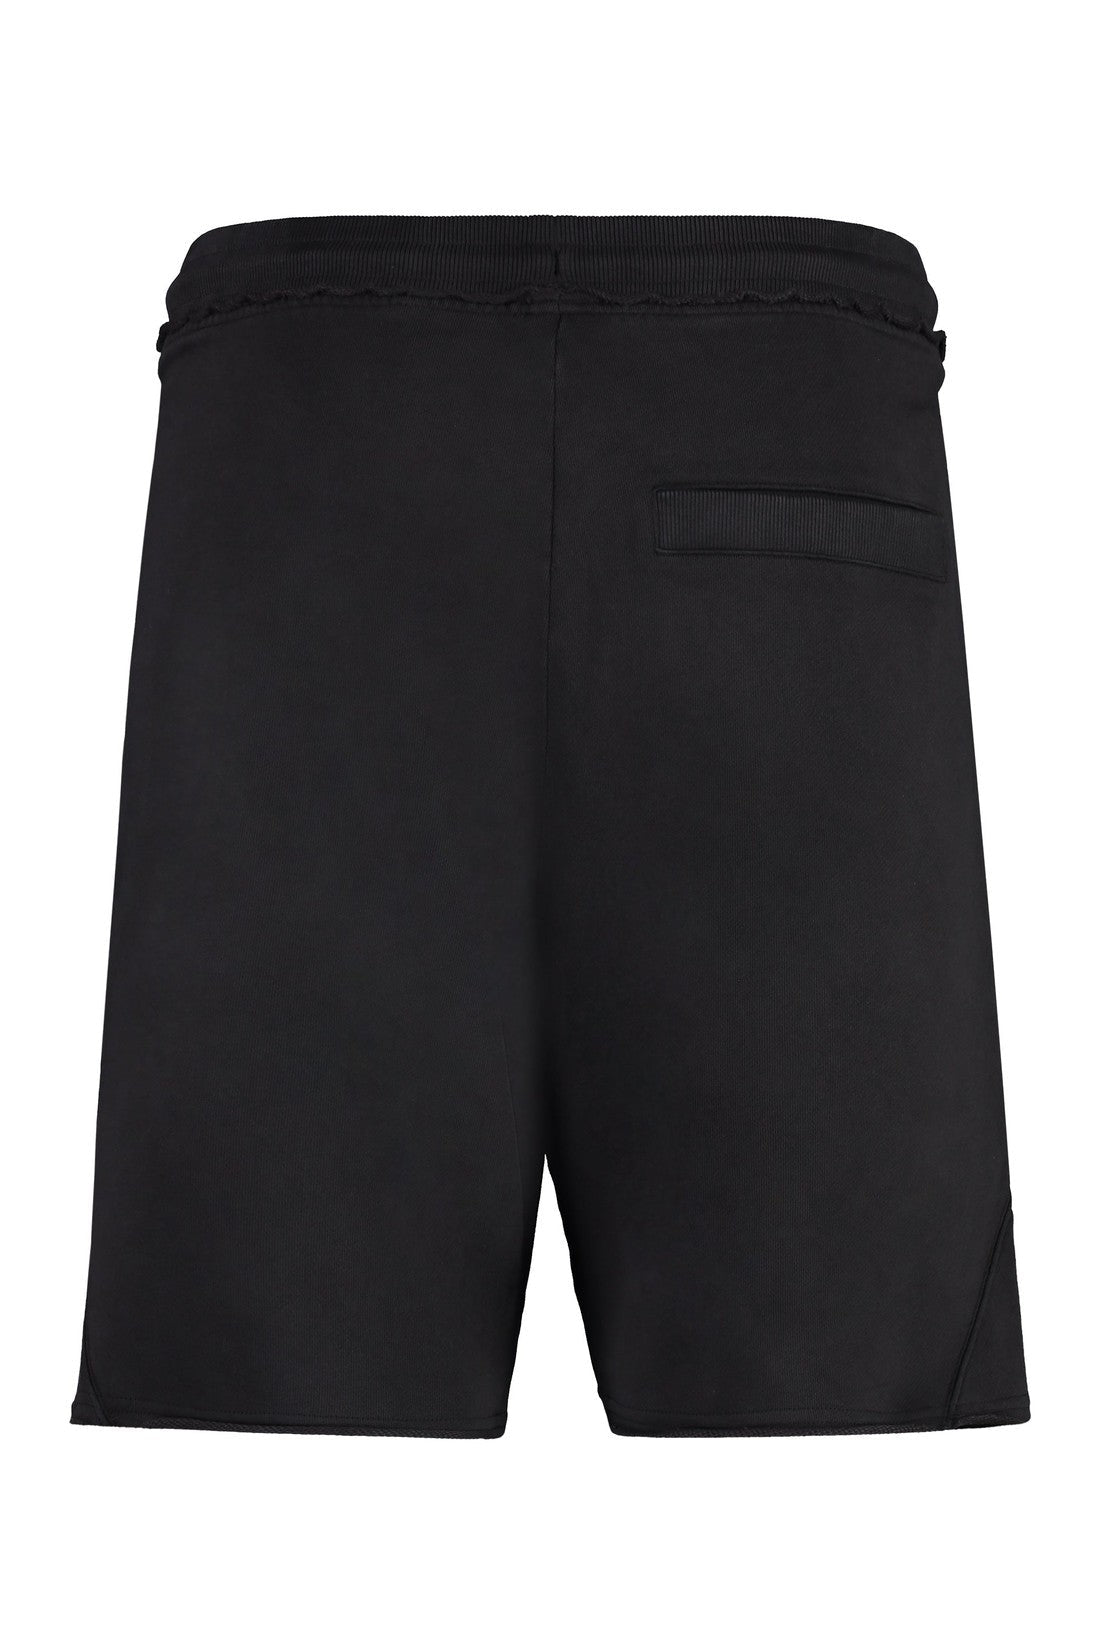 BOSS-OUTLET-SALE-Cotton bermuda shorts-ARCHIVIST